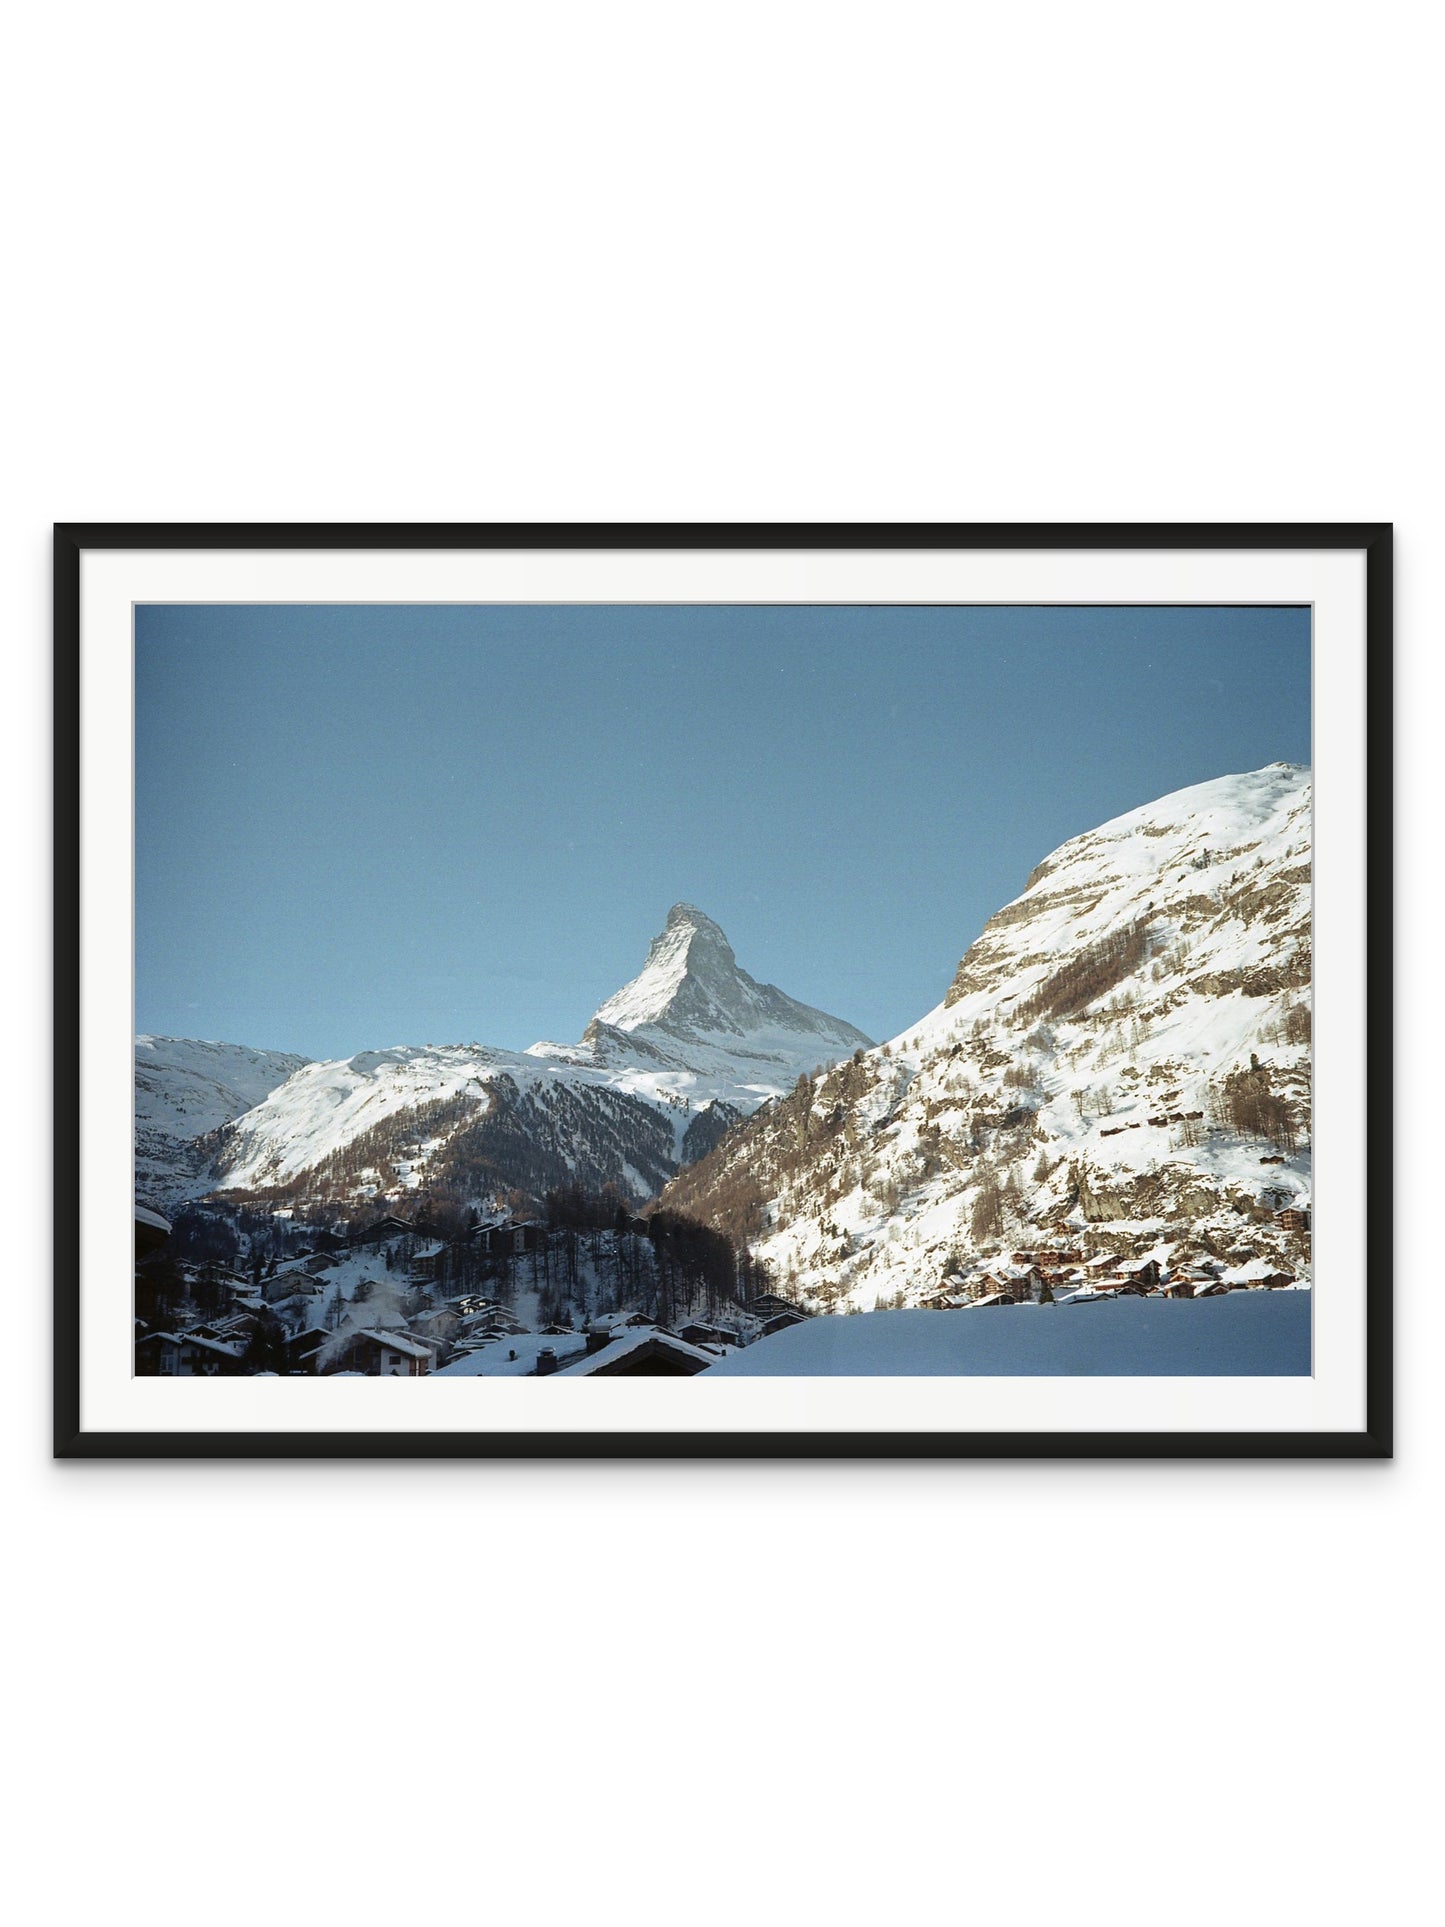 Sleeping Under the Matterhorn